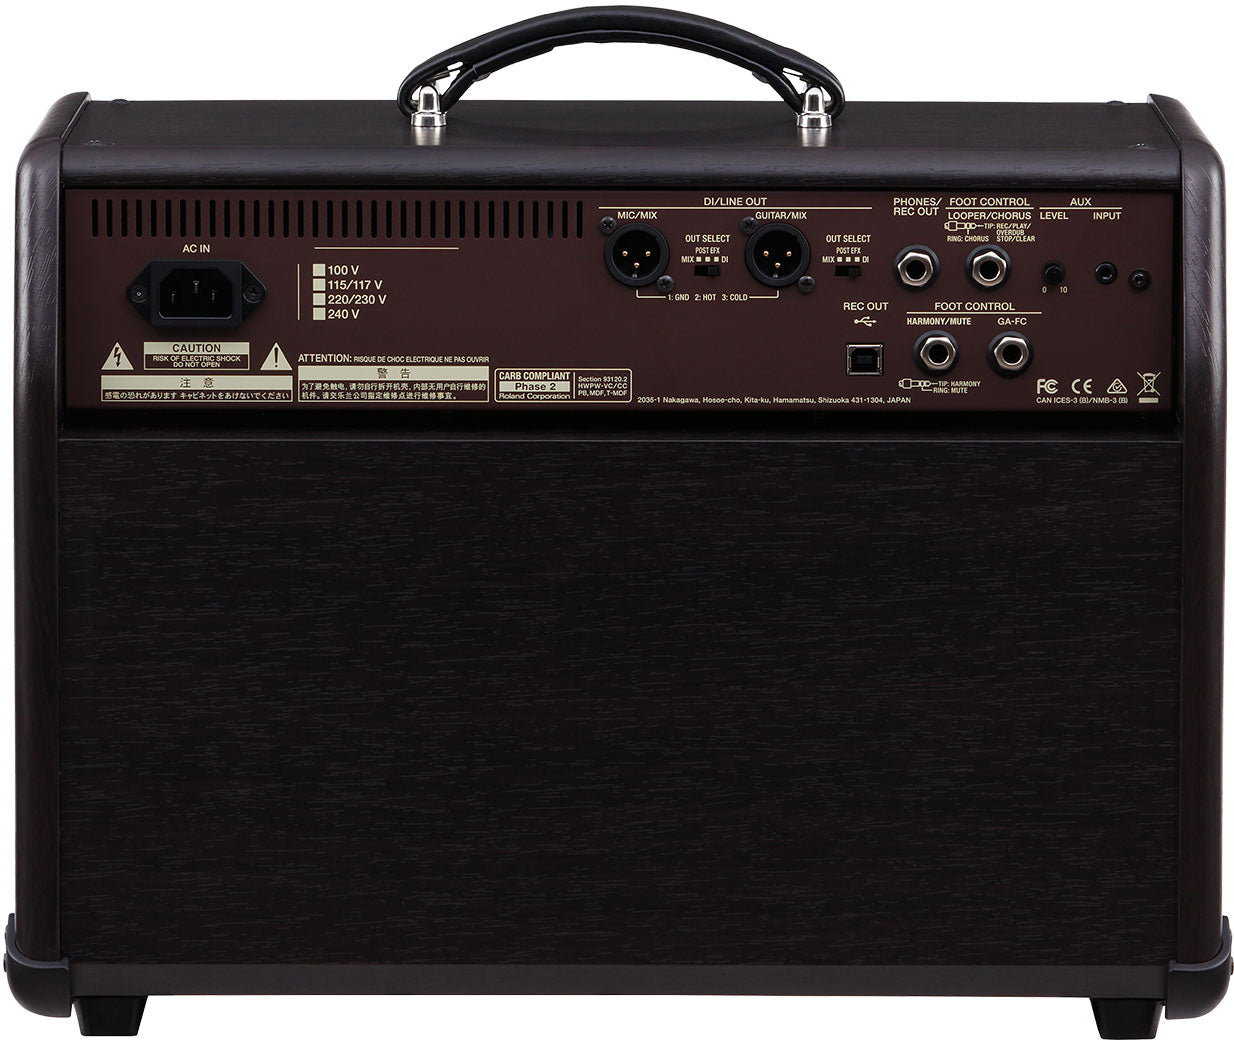 BOSS Acoustic Singer Pro Acoustic Amplifier 擴音器